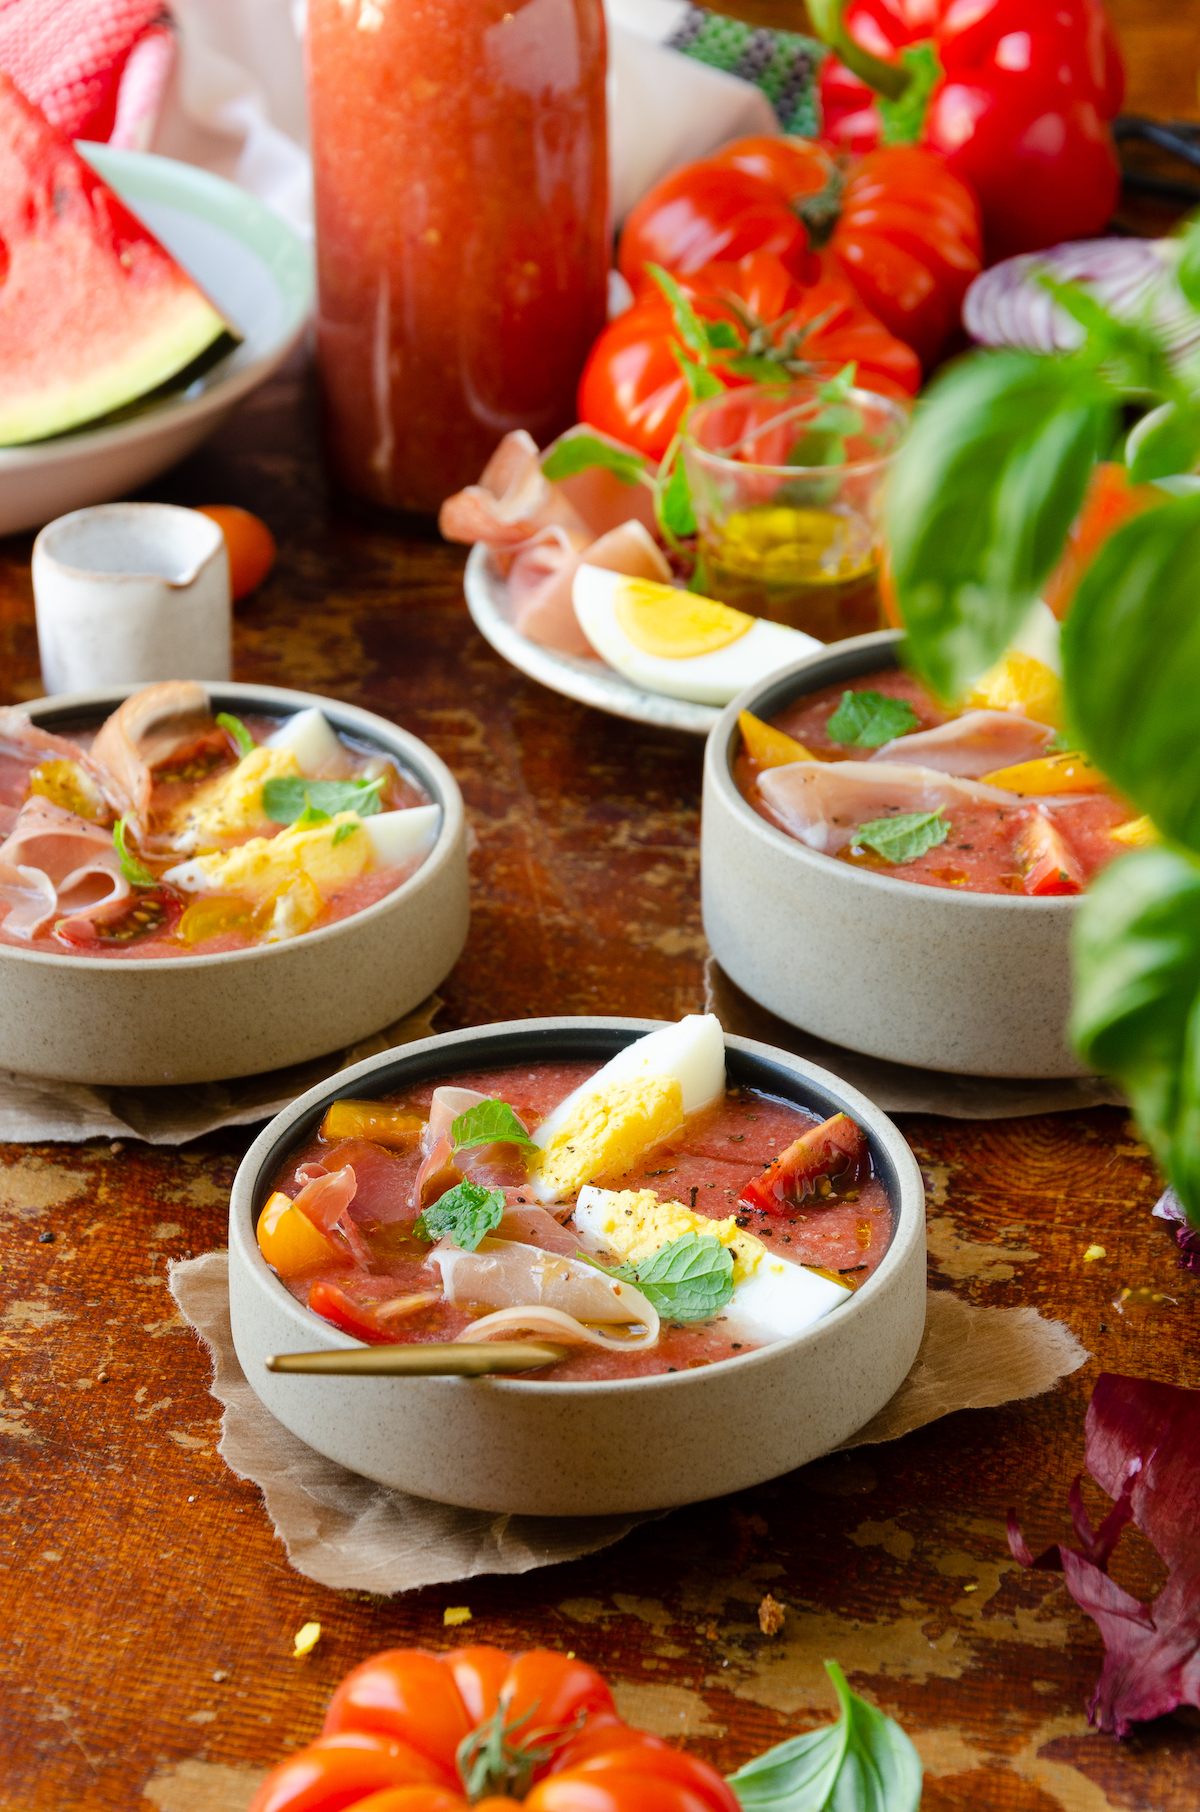 repas sain estival recette soupe froide espagnole tomate pastèque